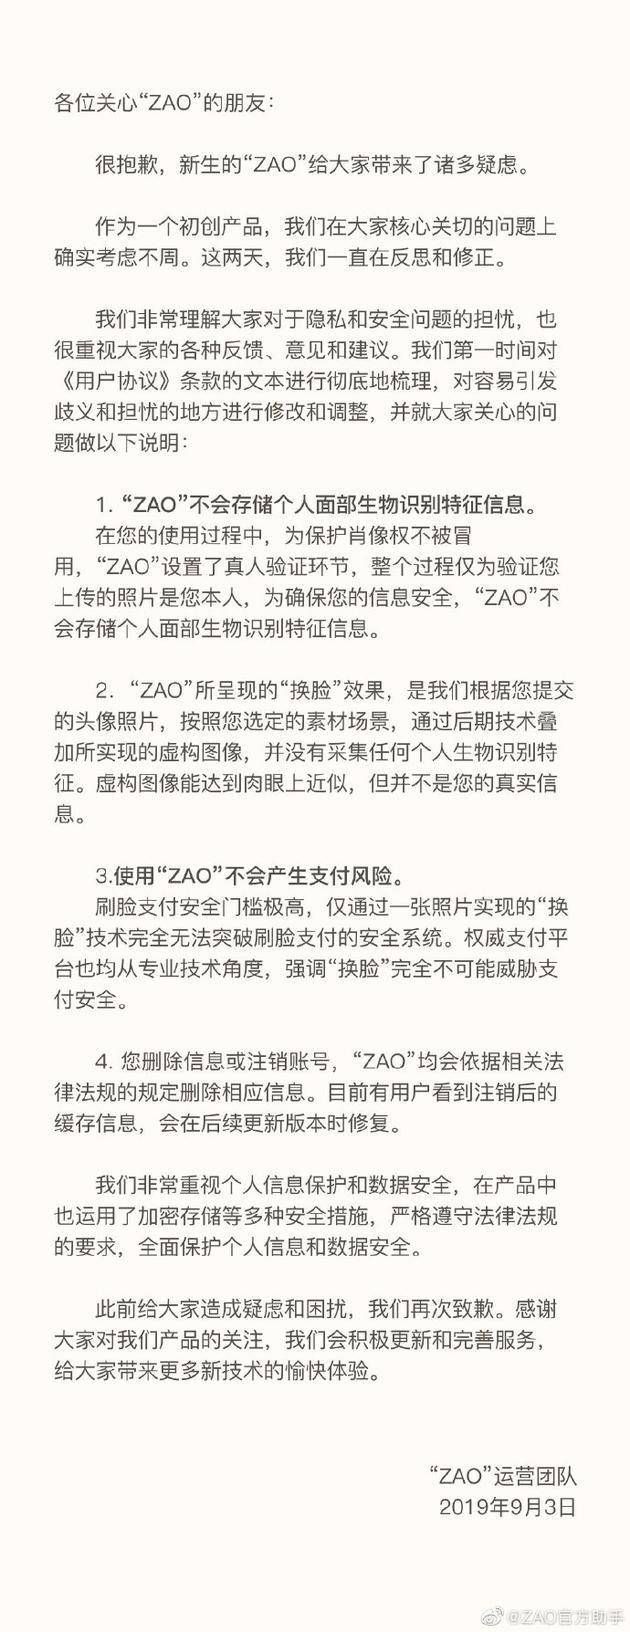 【虎嗅早报】贾跃亭辞任法拉第未来CEO；ZAO回应:不会存储面部识别特征信息